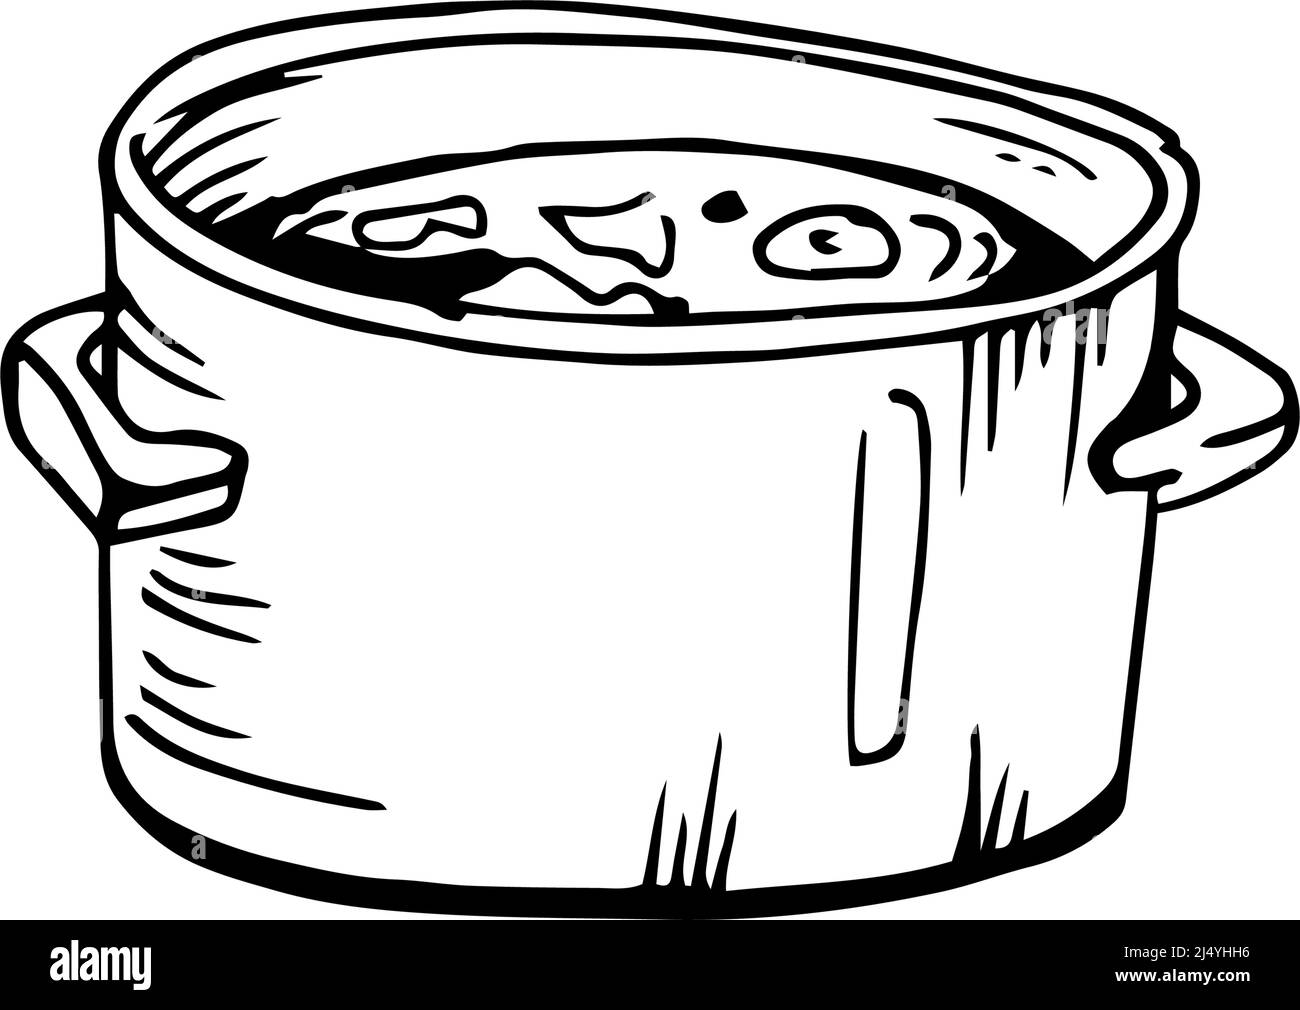 Soupe cuite fines lignes noires sur fond blanc - illustration vectorielle Illustration de Vecteur